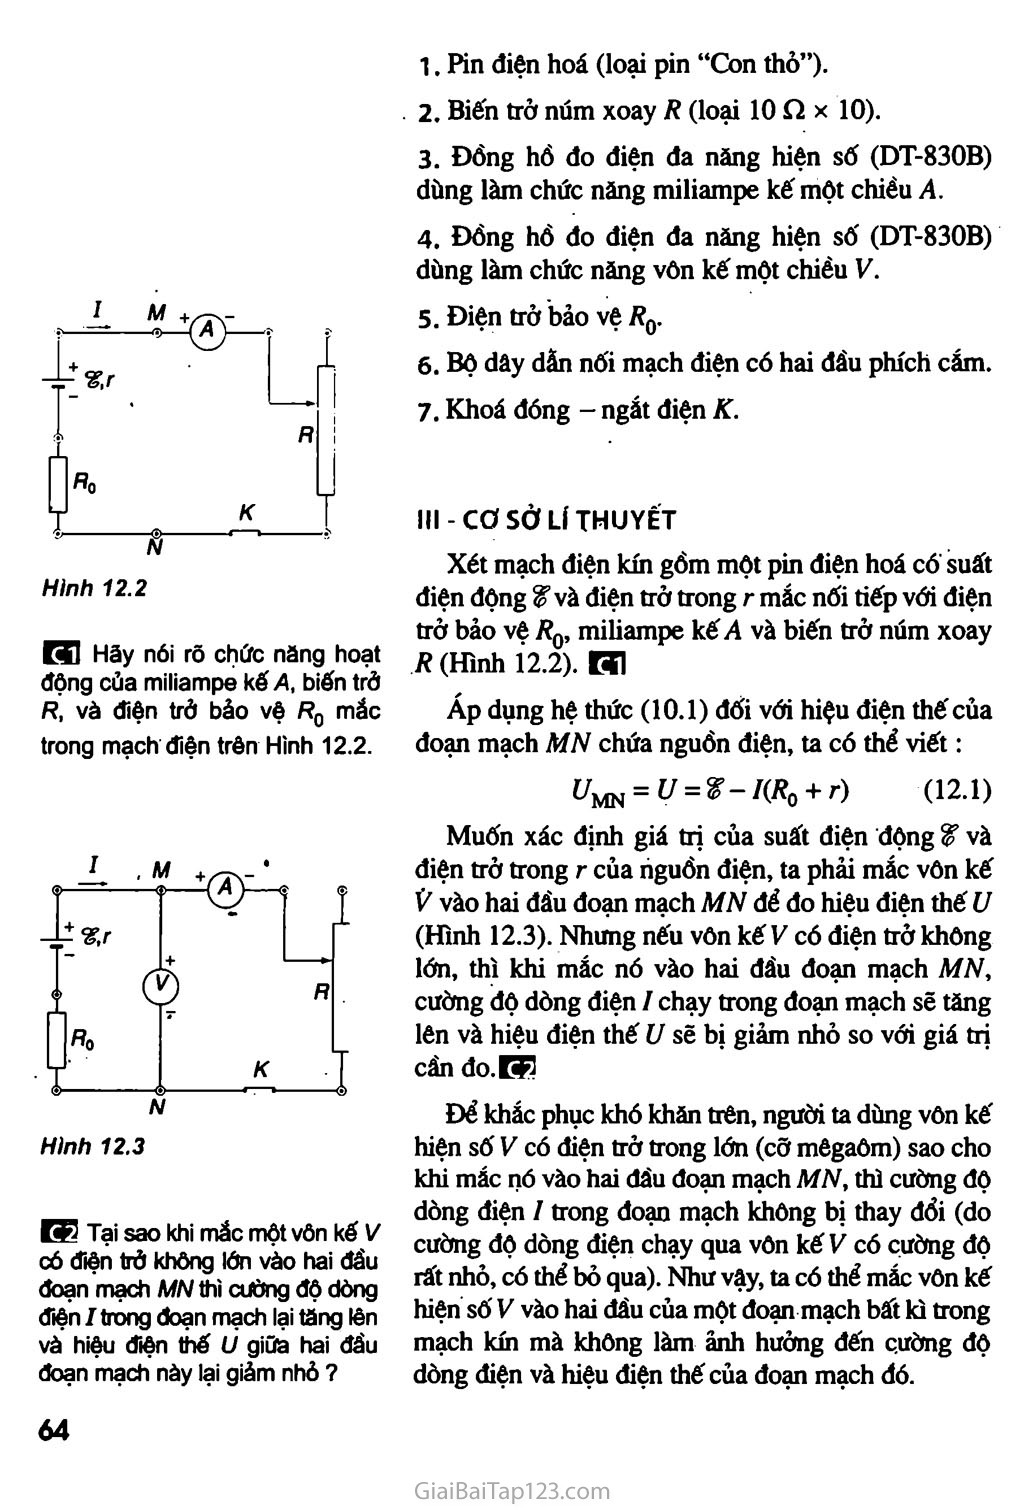 Bài 12. Thực hành: Xác định suất điện động và điện trở trong của một pin điện hoá trang 2